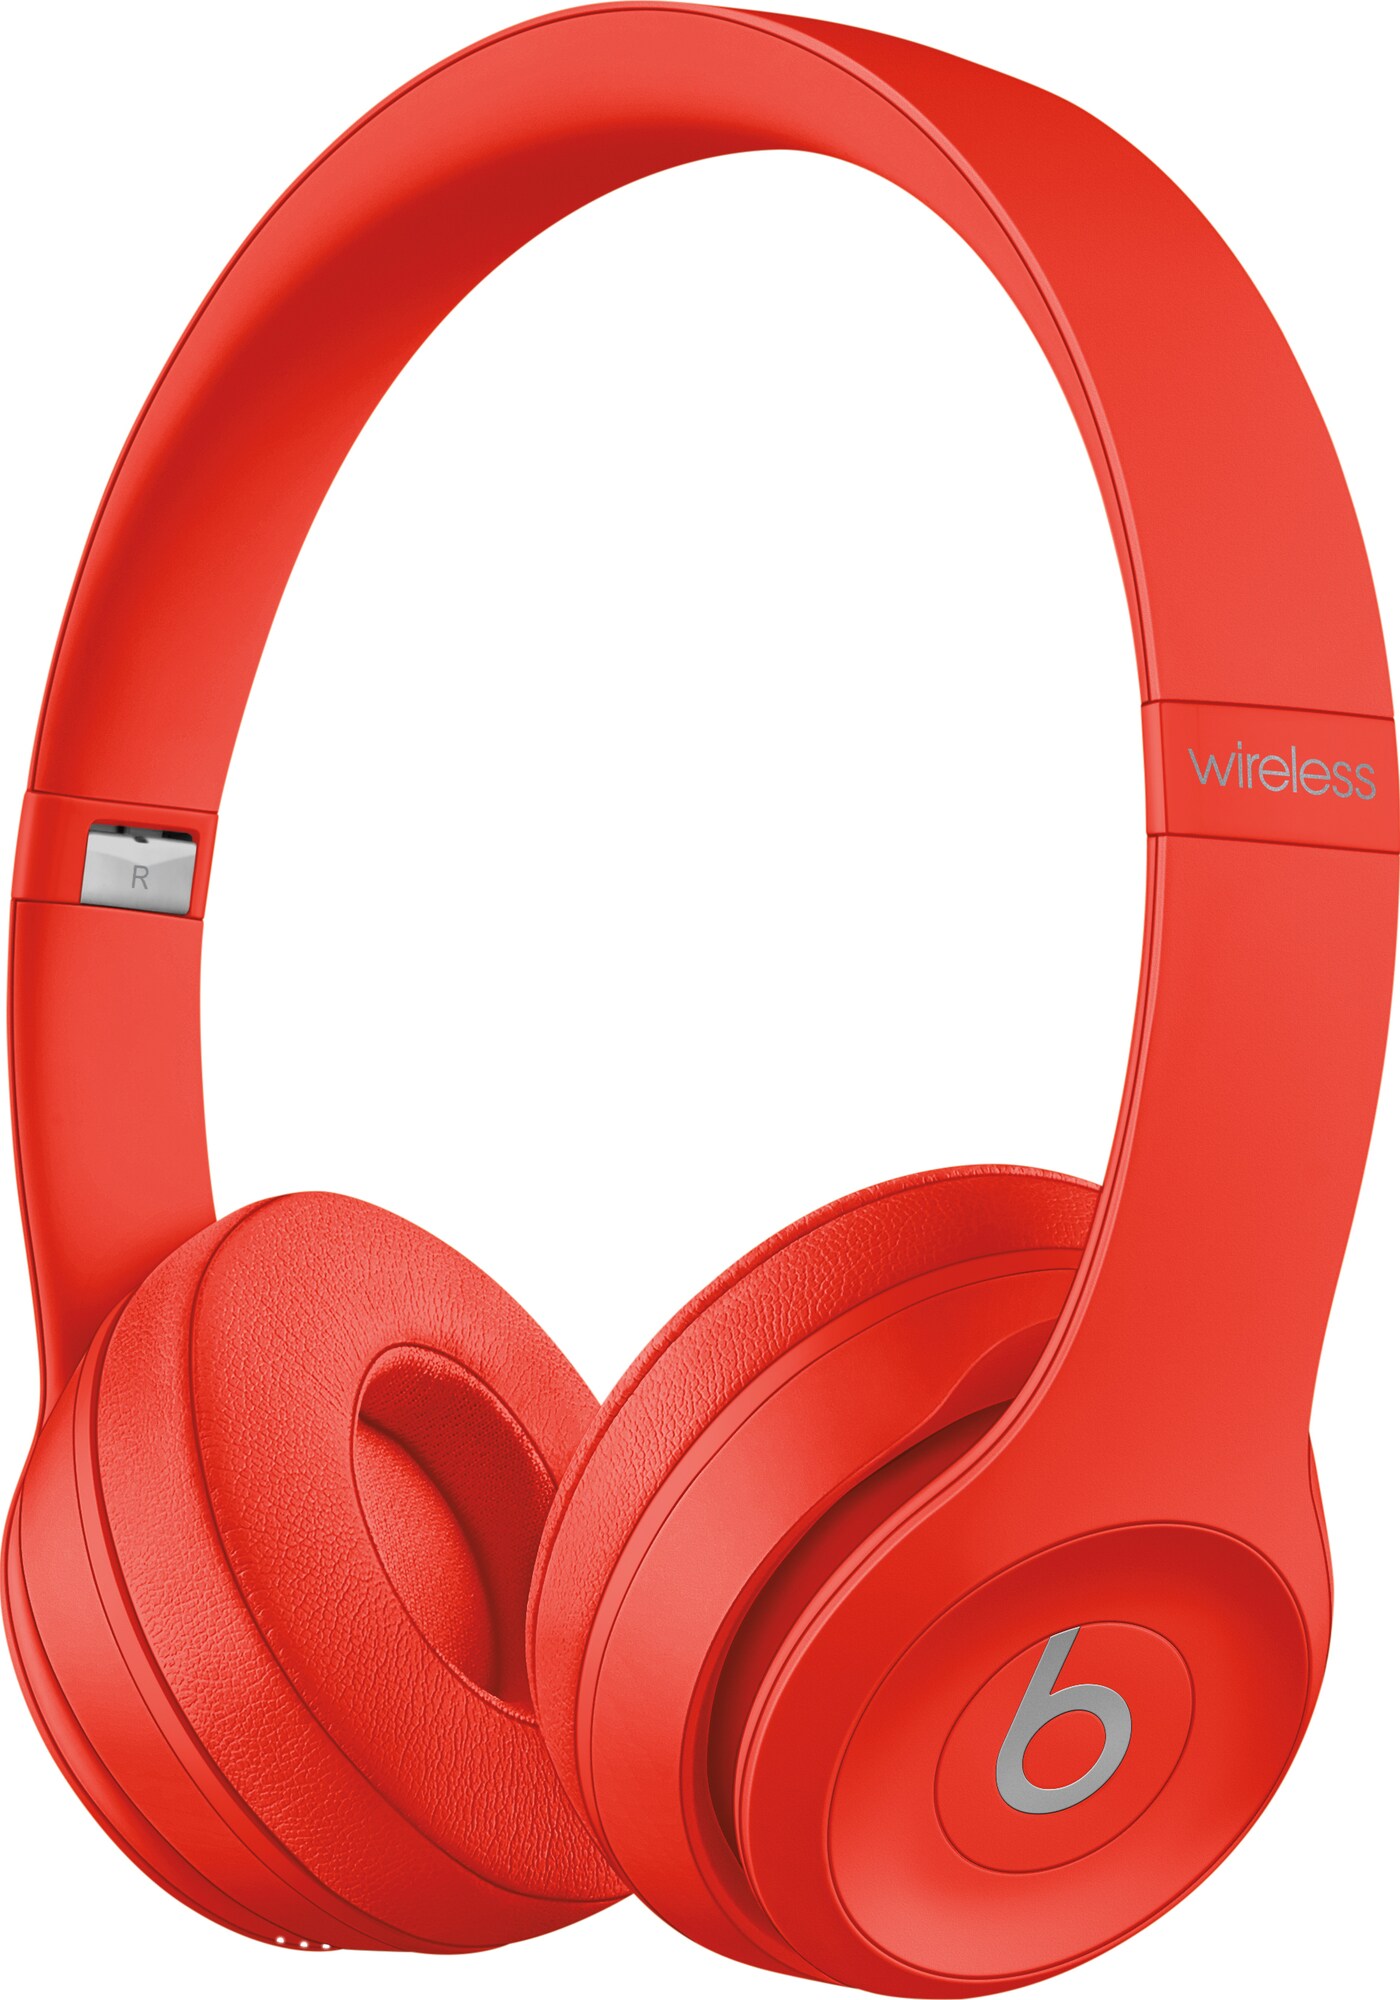 Beats Solo3 trådløse hodetelefoner (rød) - Elkjøp